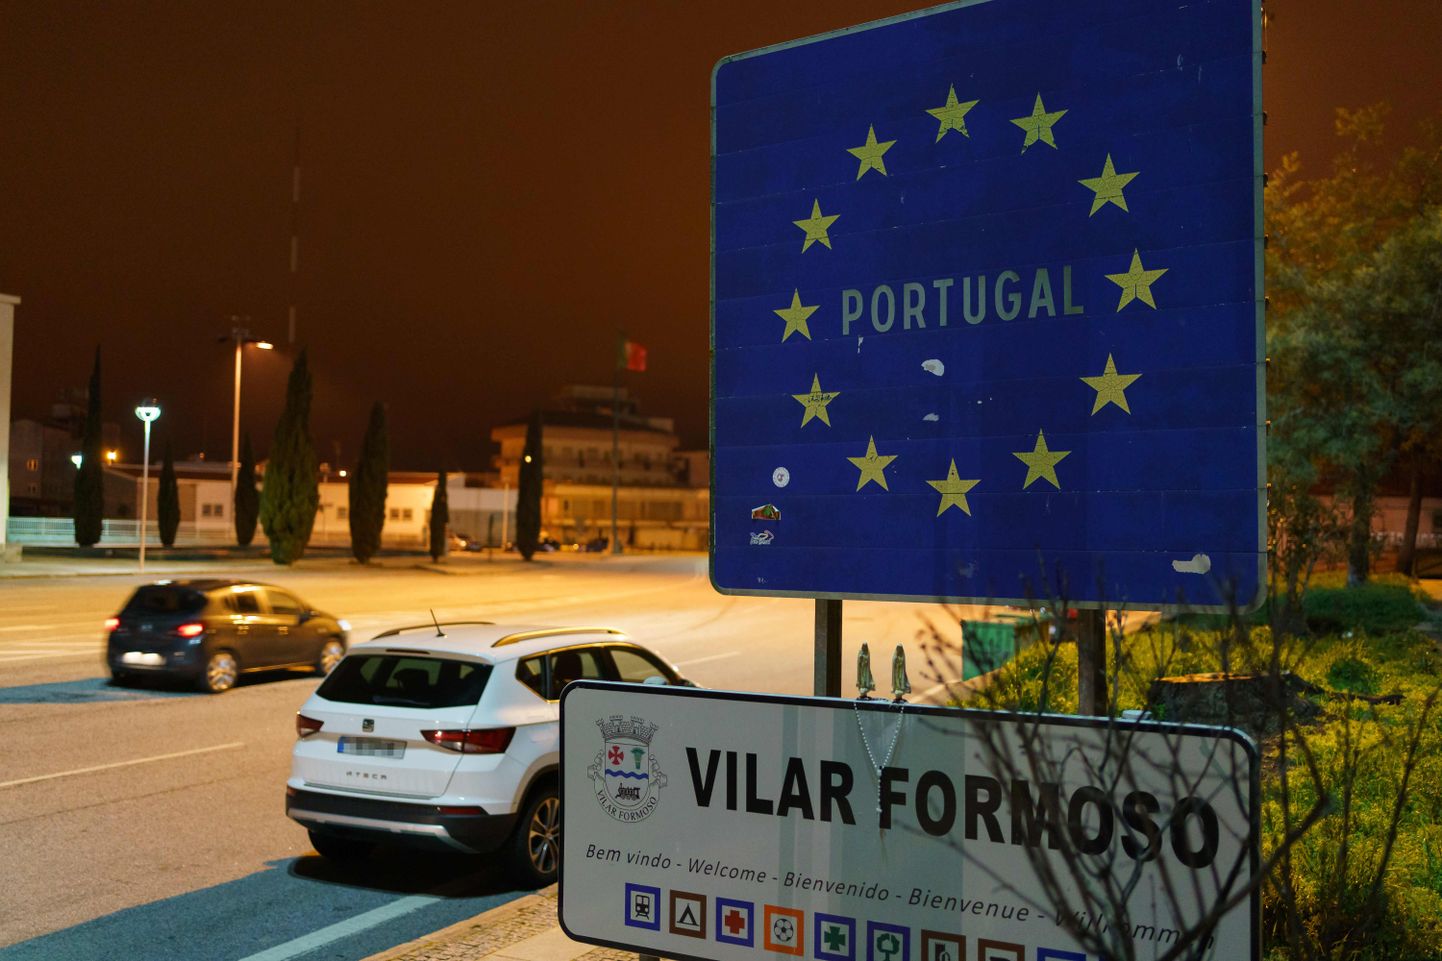 Portugali vilkaim piirilinn Hispaaniaga on Vilar Formoso.